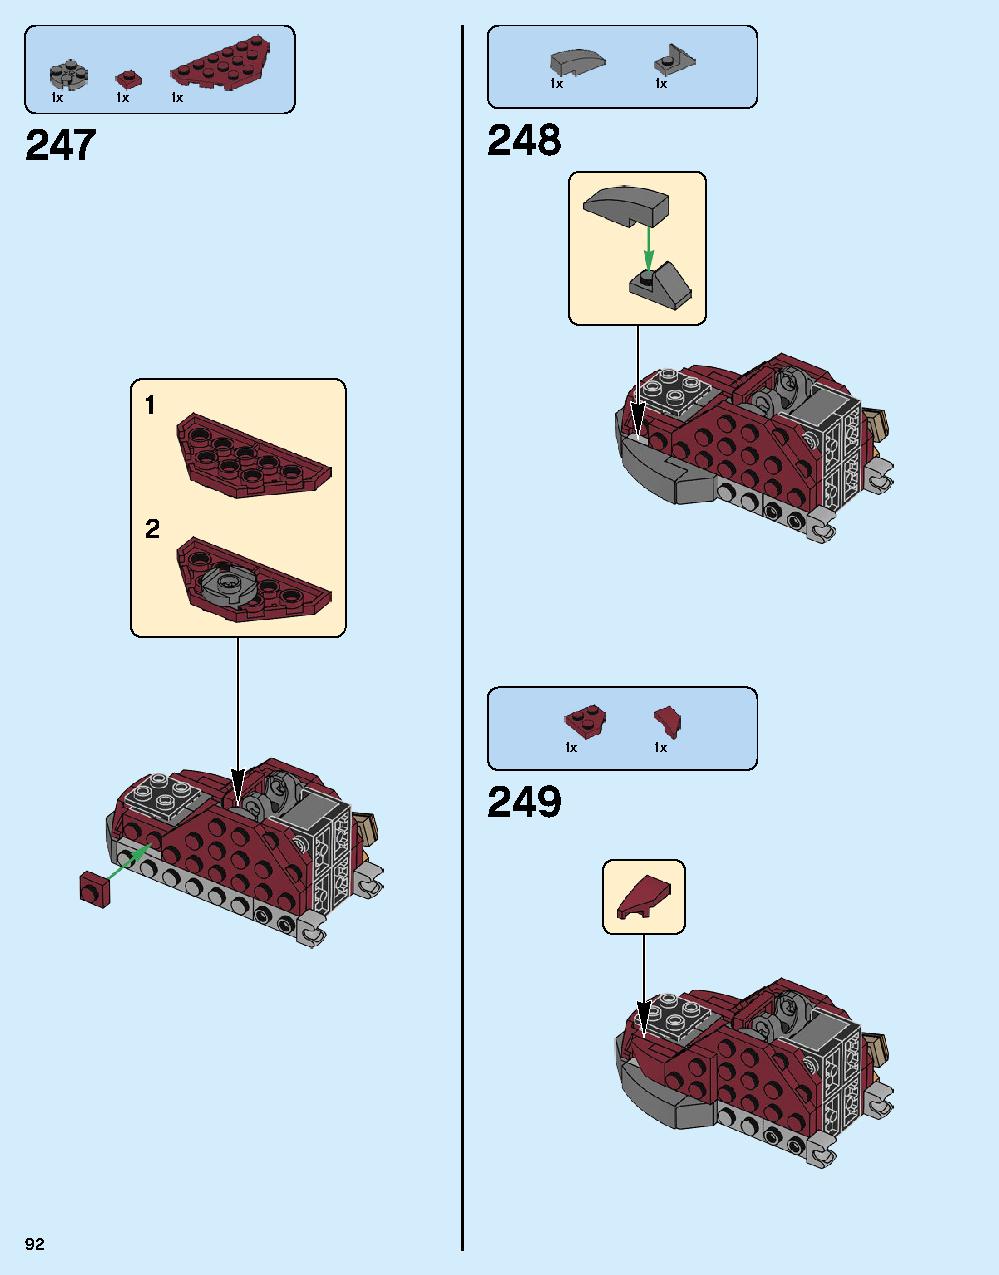 ハルクバスター：ウルトロン・エディション 76105 レゴの商品情報 レゴの説明書・組立方法 92 page